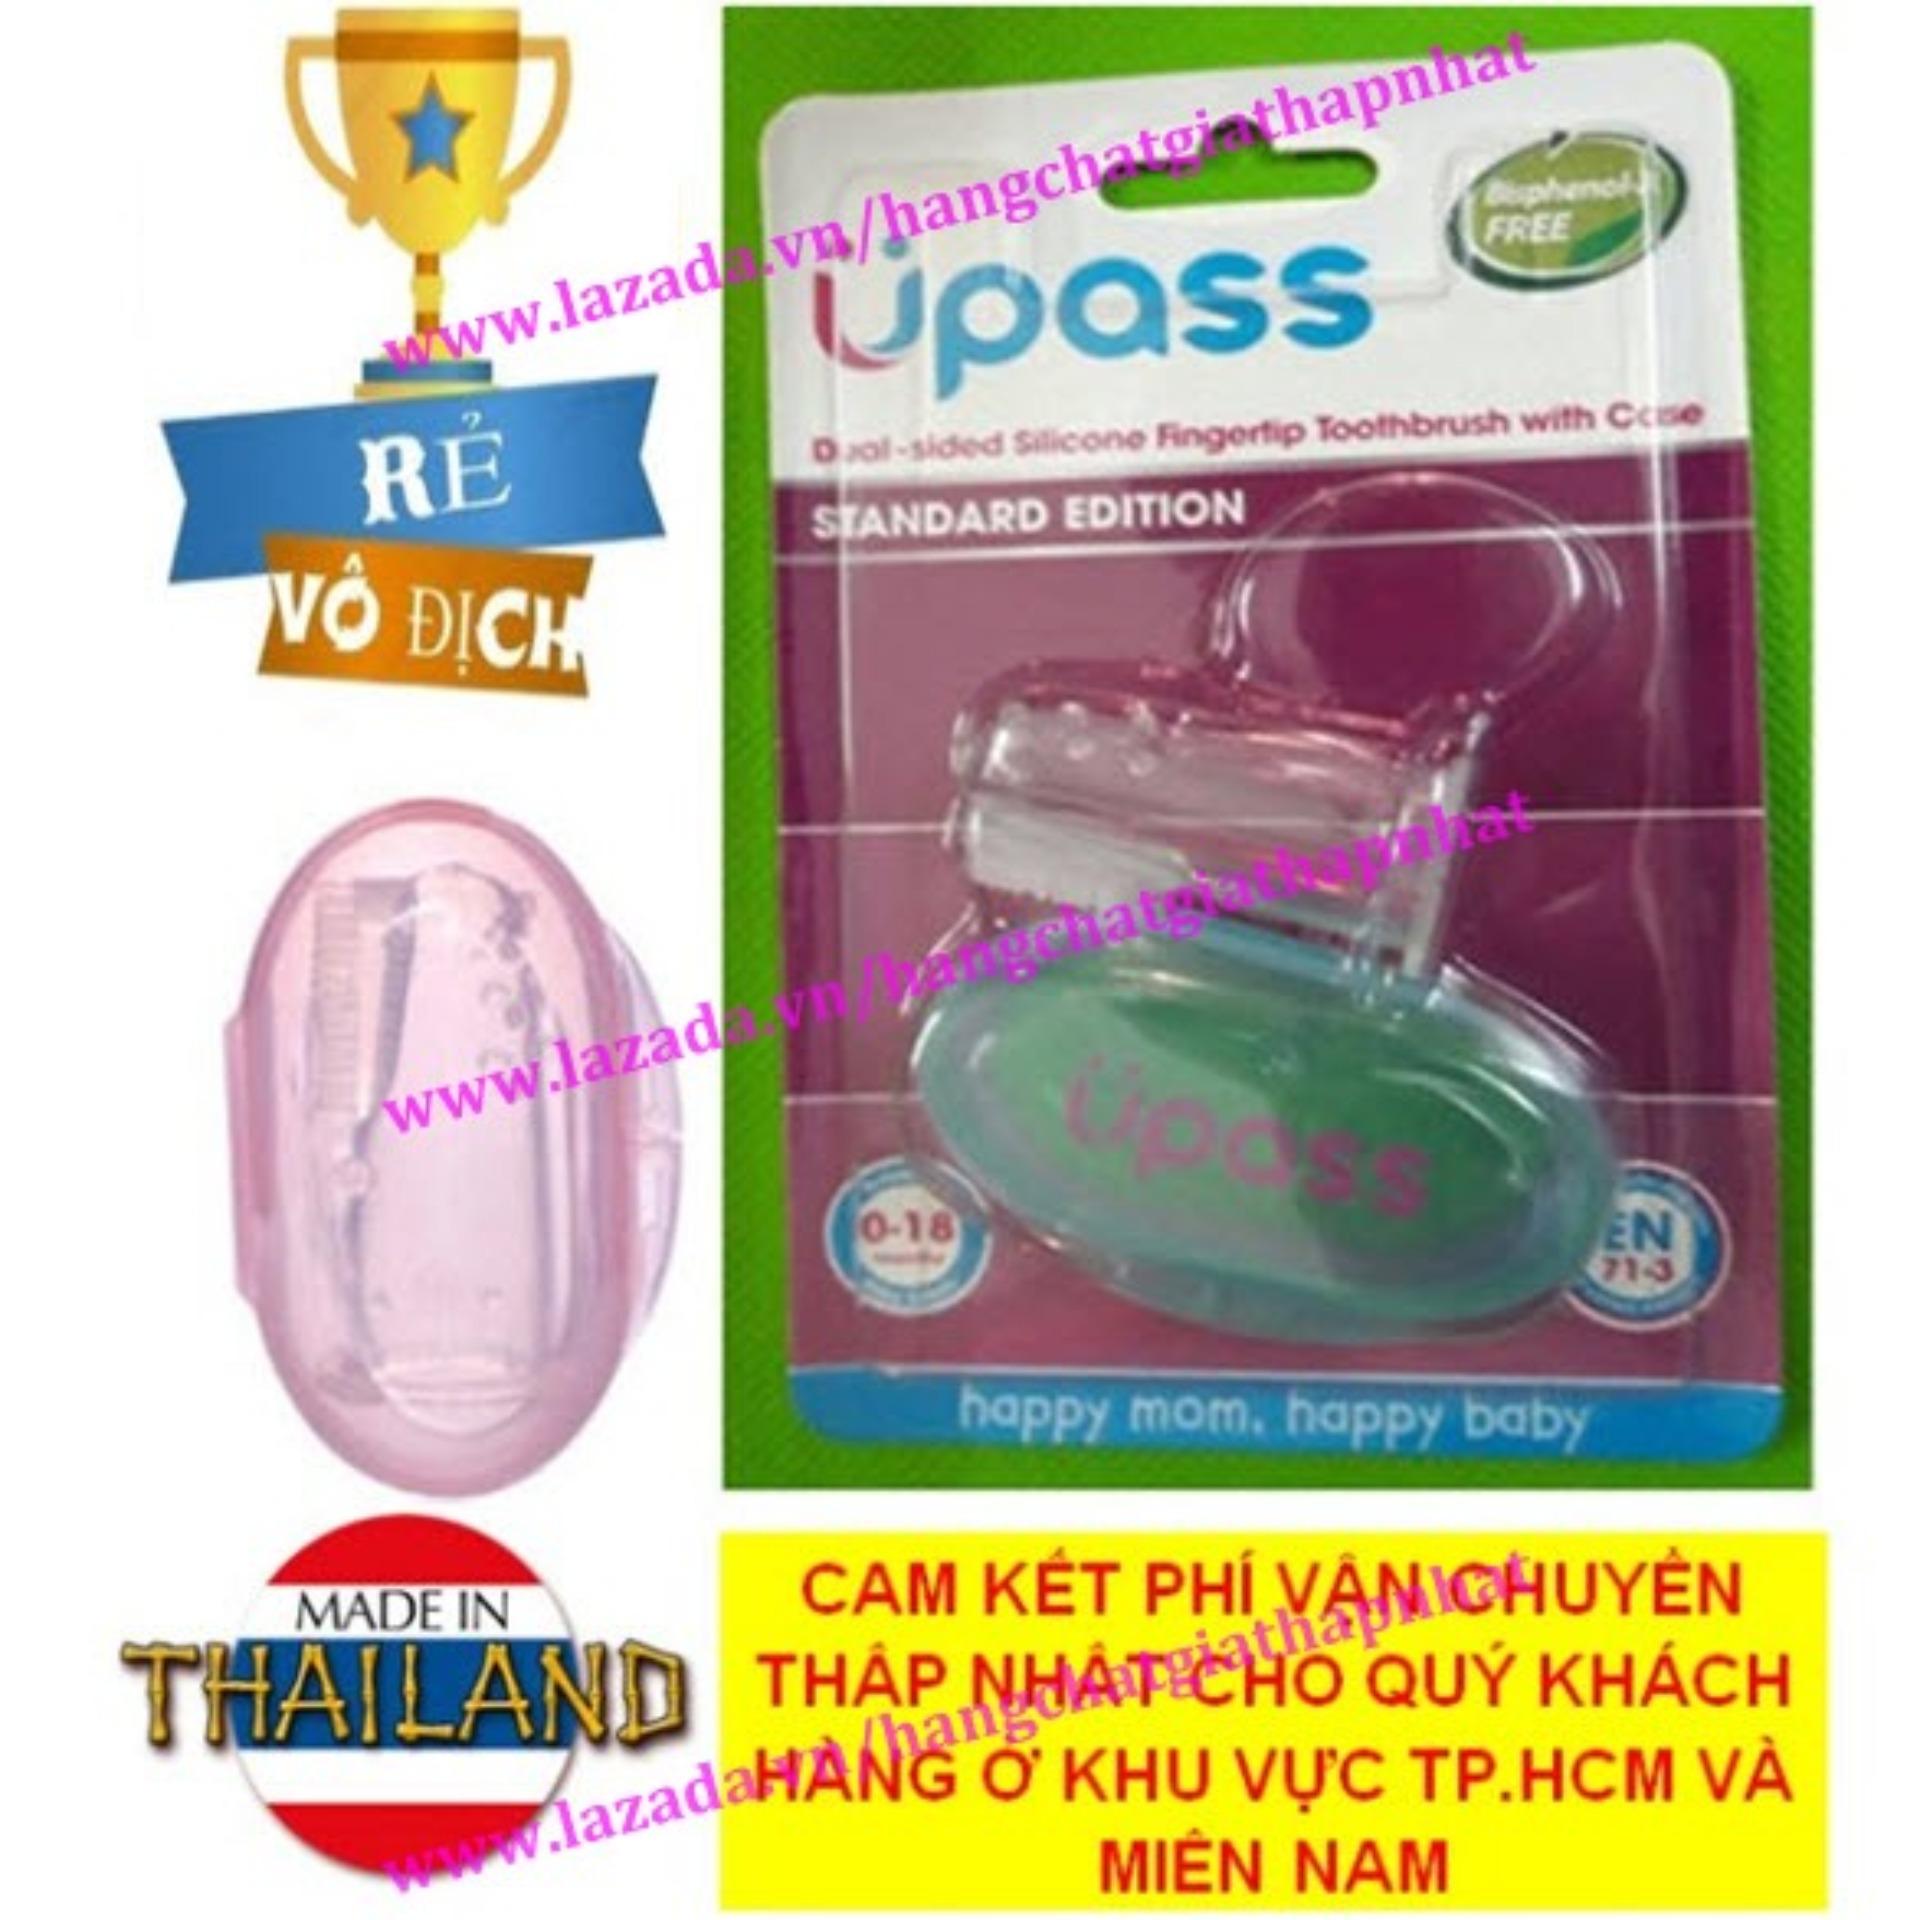 RẺ VÔ ĐỊCH Sản xuất tại Thái Lan Hồng Rơ lưỡi xỏ ngón silicone siêu mềm